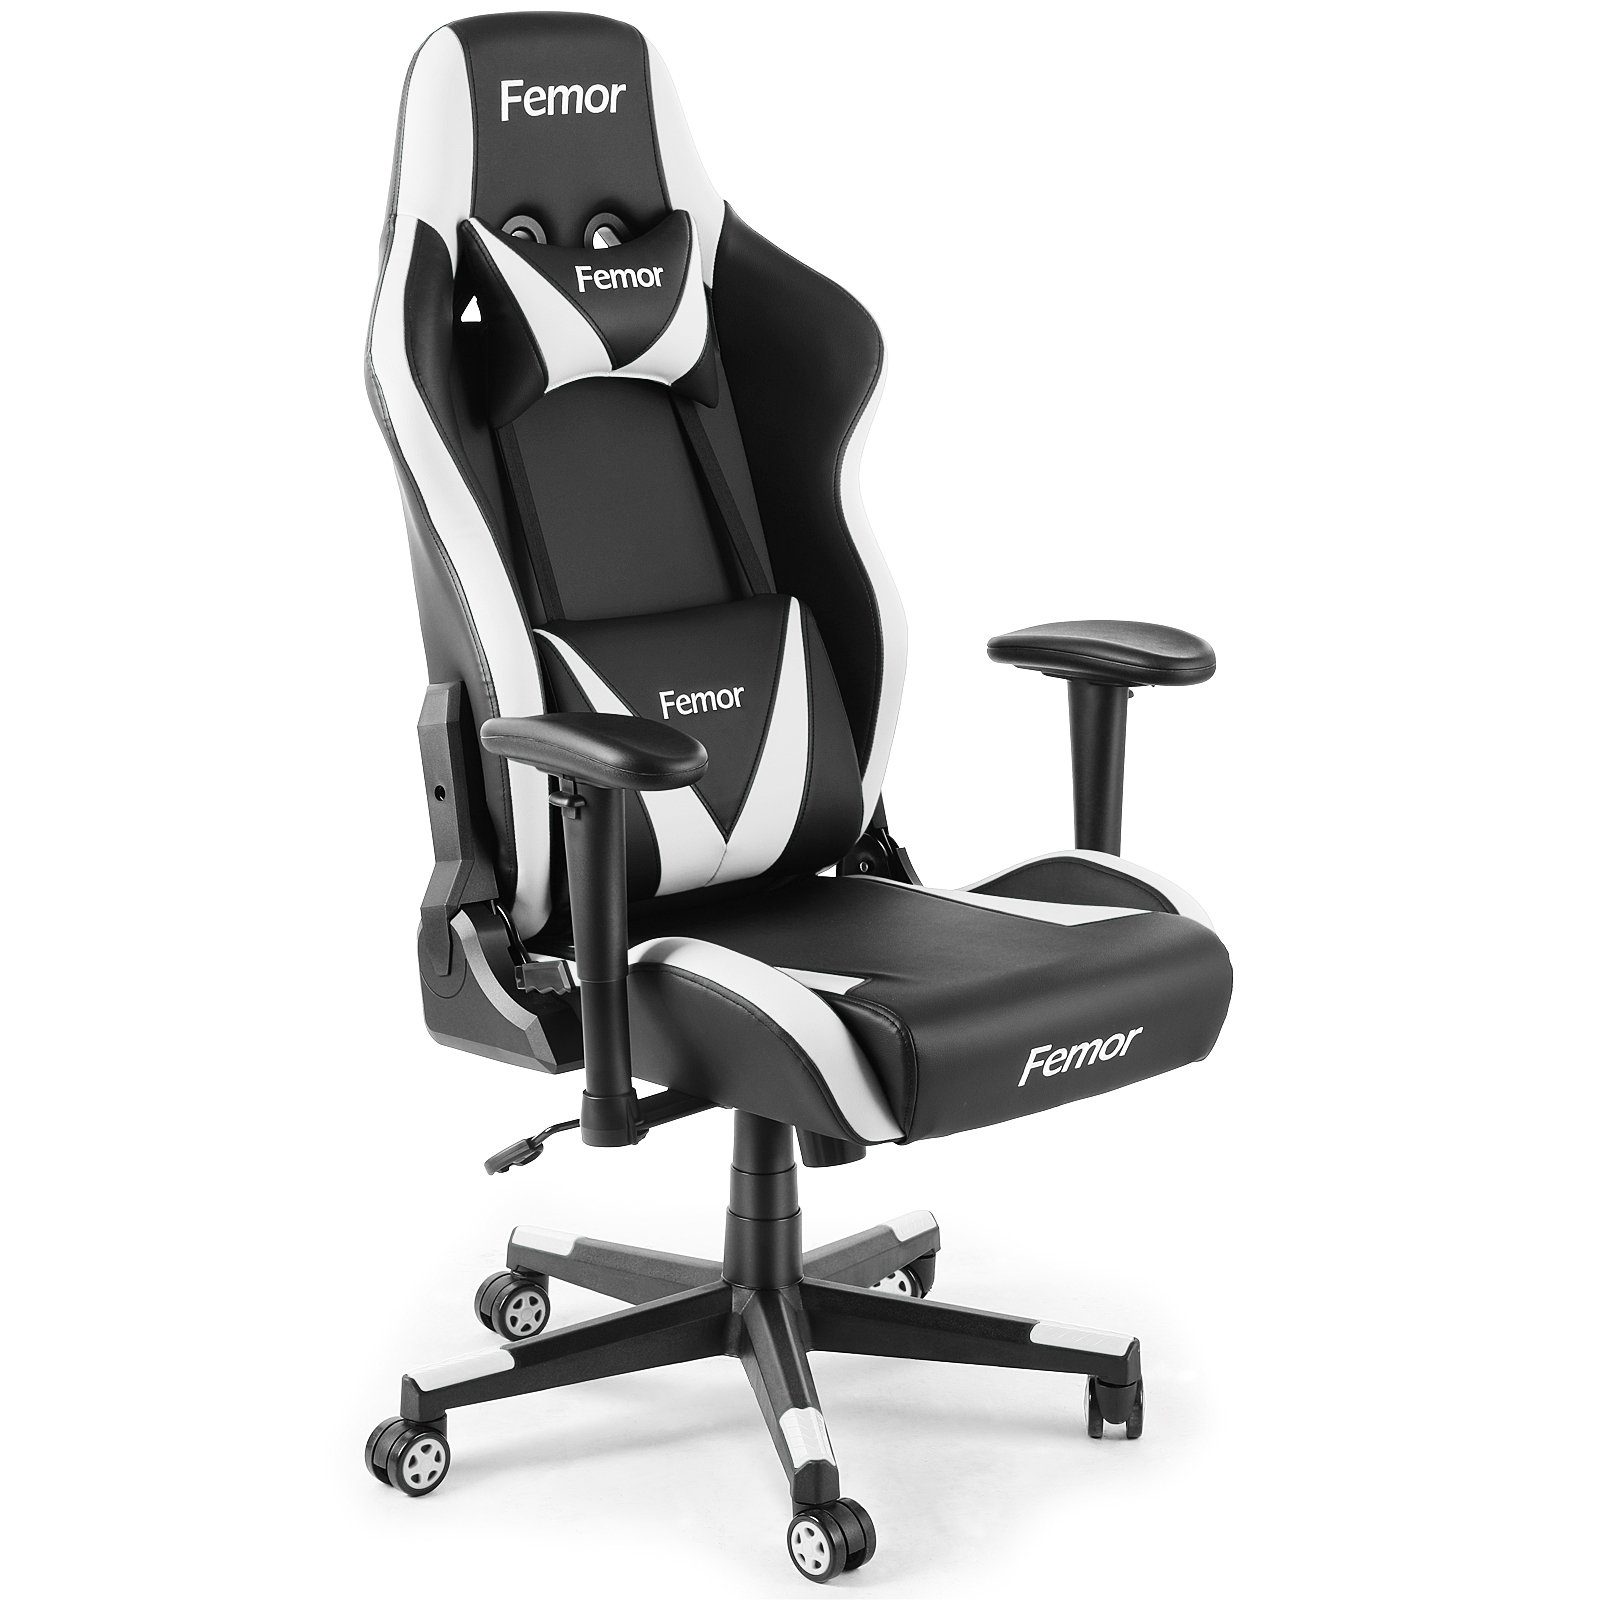 Femor Gaming-Stuhl, Bürostuhl, Gamer Ergonomischer Stuhl, bequemer Gaming  Sessel mit Kopfstütze und Lendenkissen, höhenverstellbar, drehbar,  einstellbare Armlehne, 90-165°Neigungswinkel, einfacher Aufbau